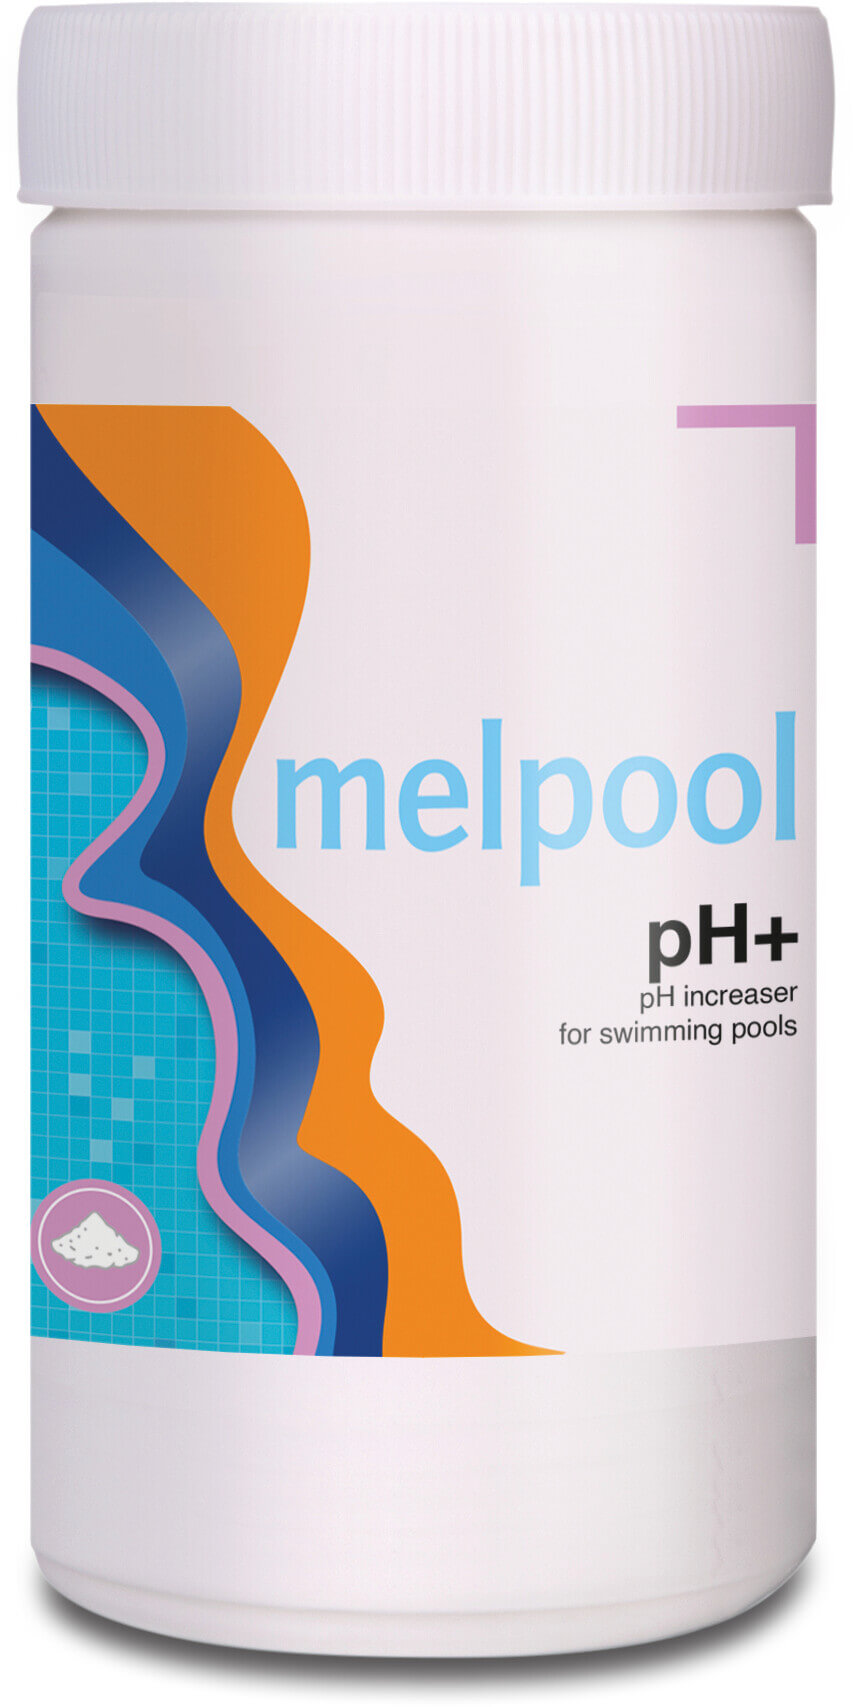 Melpool pH+ natriumkarbonat för att öka pH 1000g